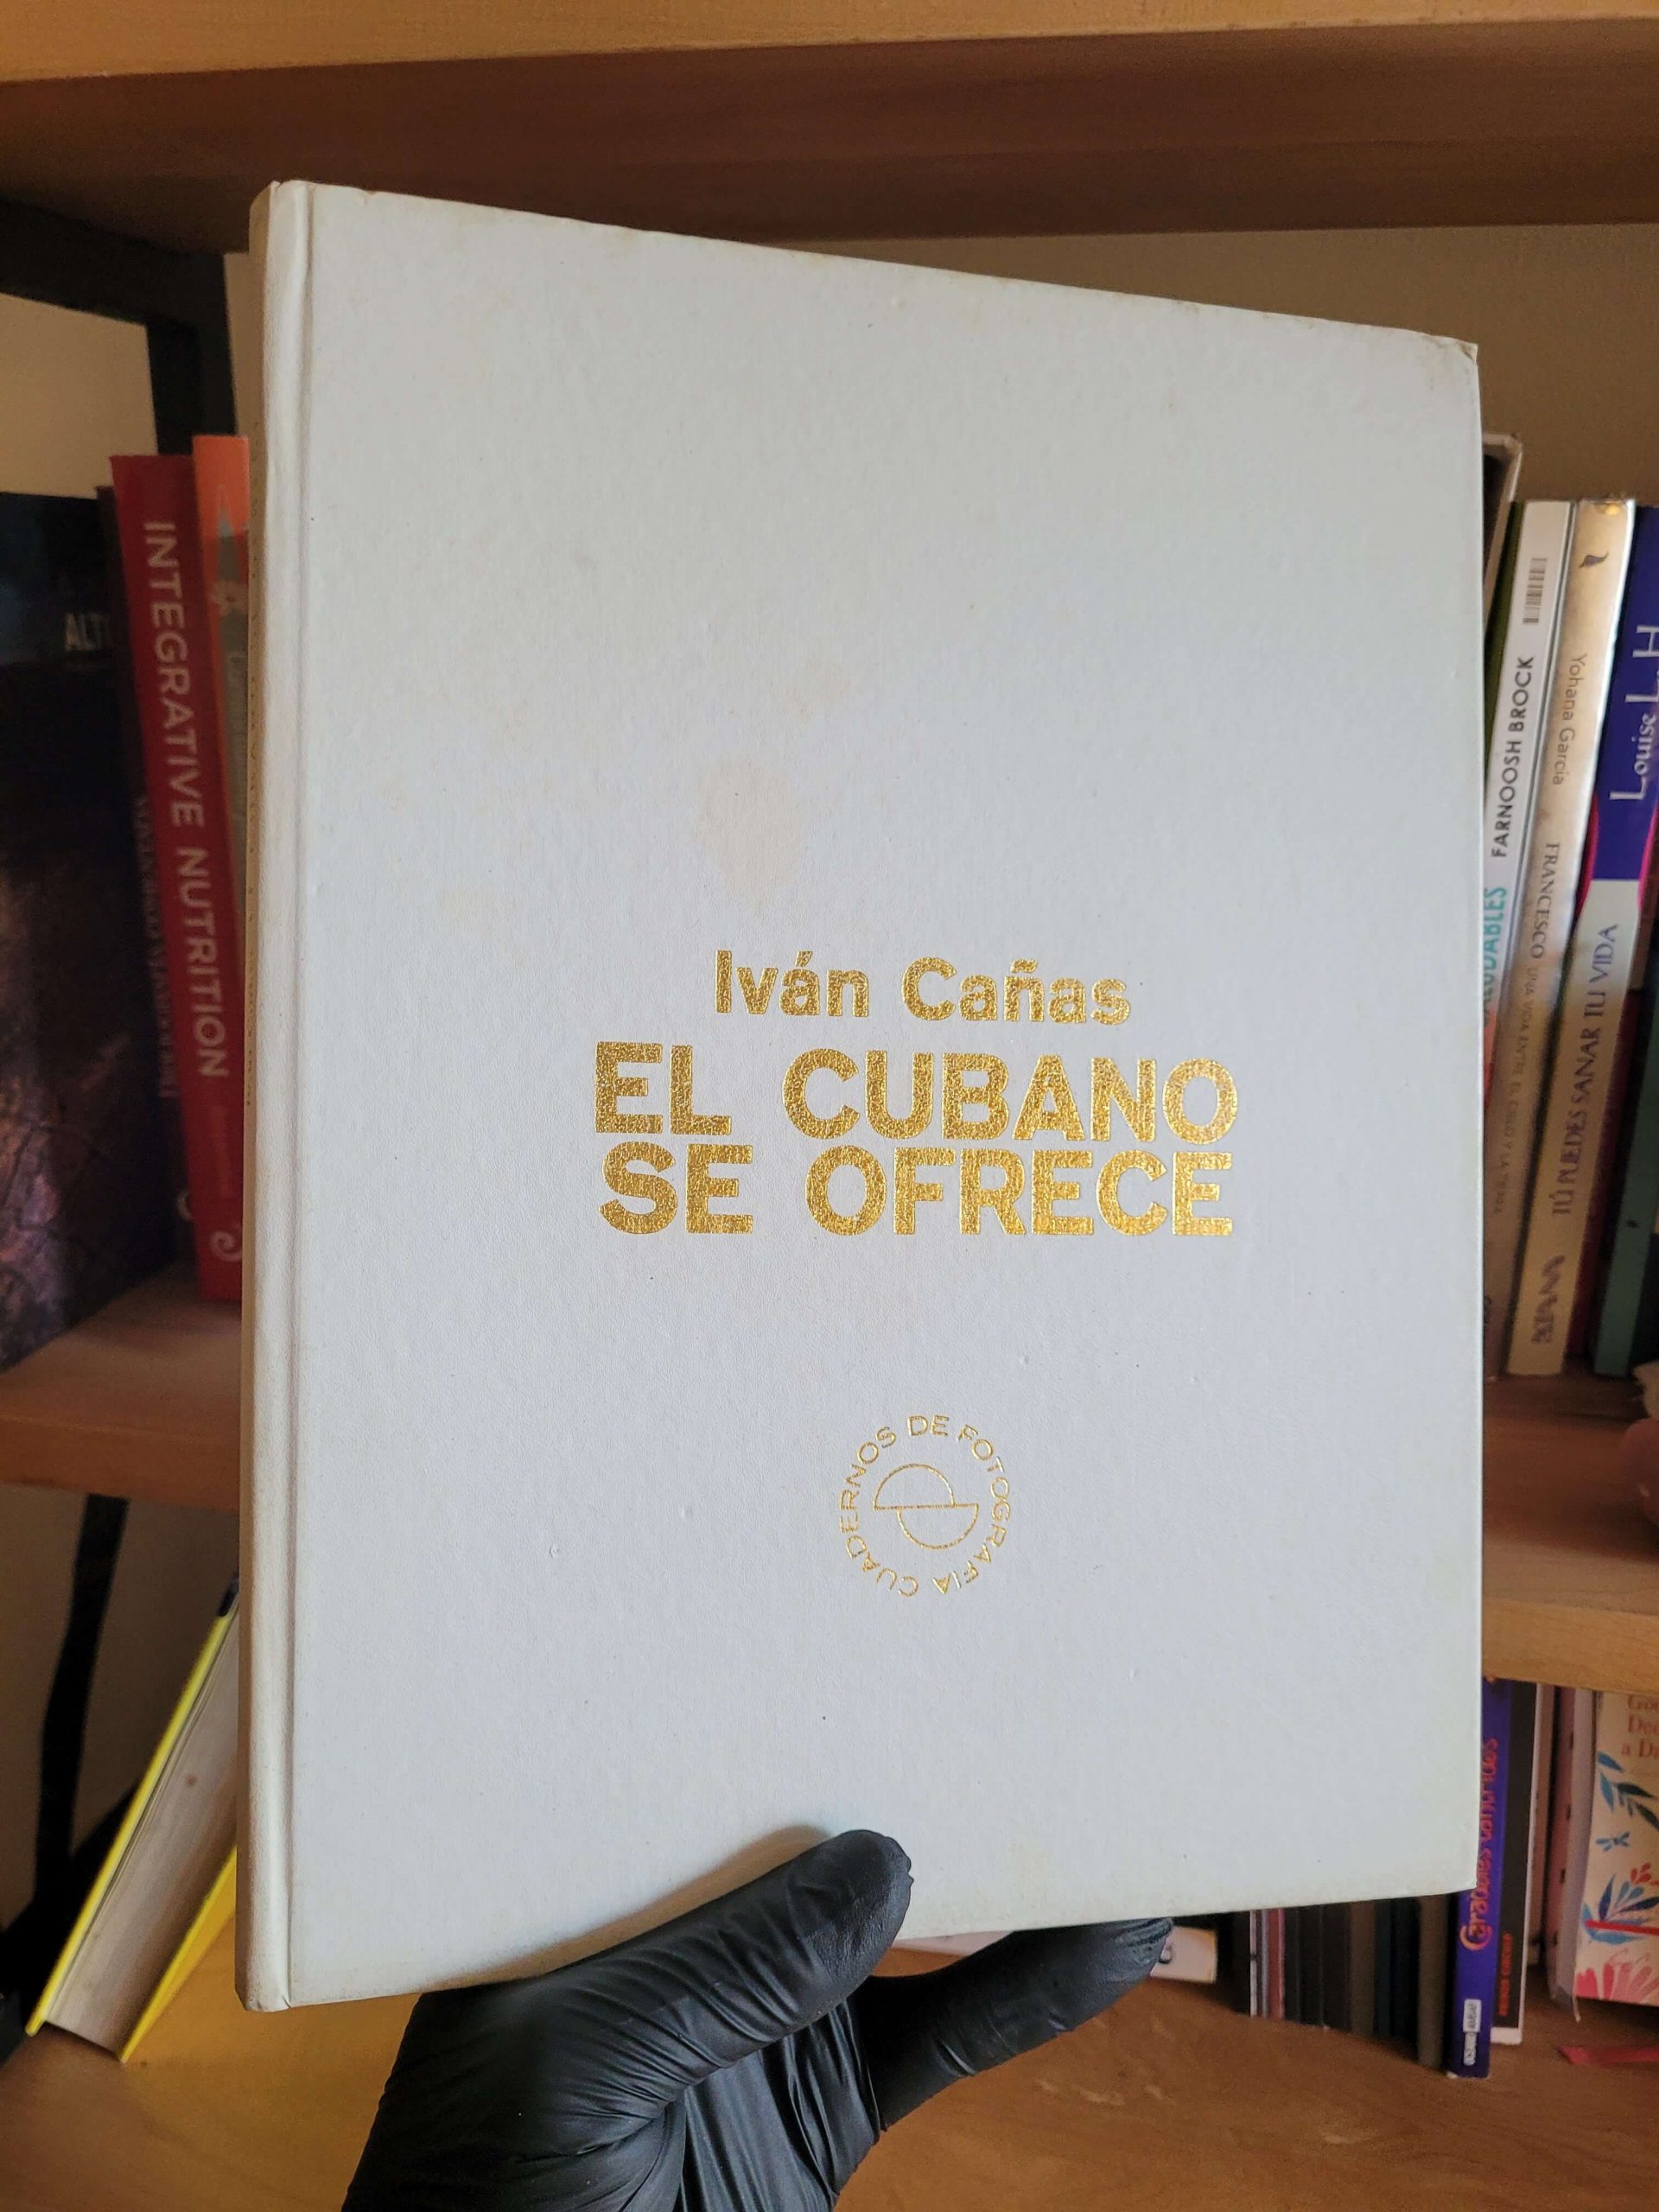 (1982) El Cubano se ofrece (Ivan Cañas)